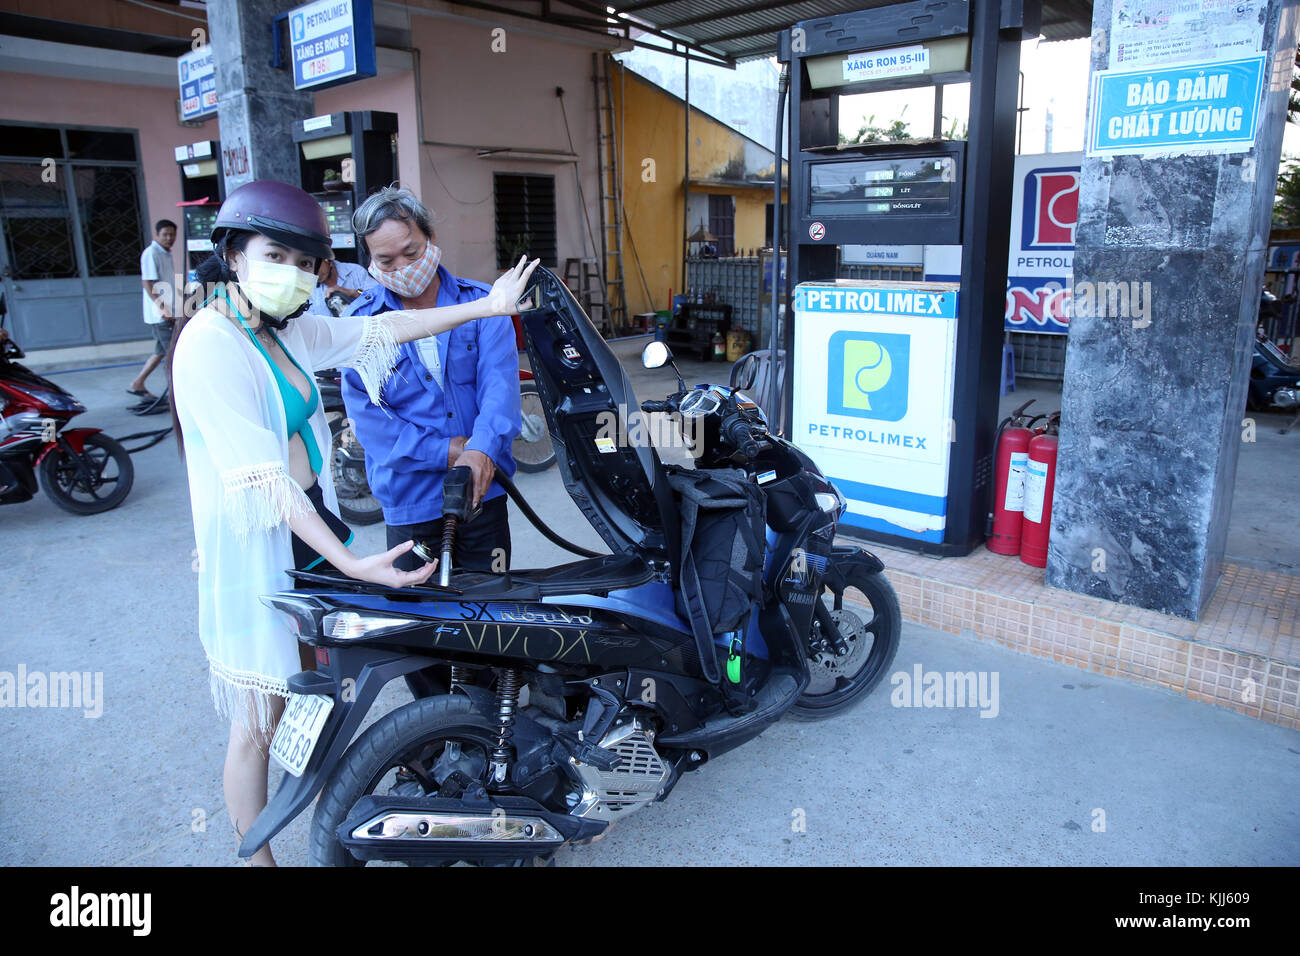 Préposé remplissant un scooter. Hoi An. Le Vietnam. Banque D'Images